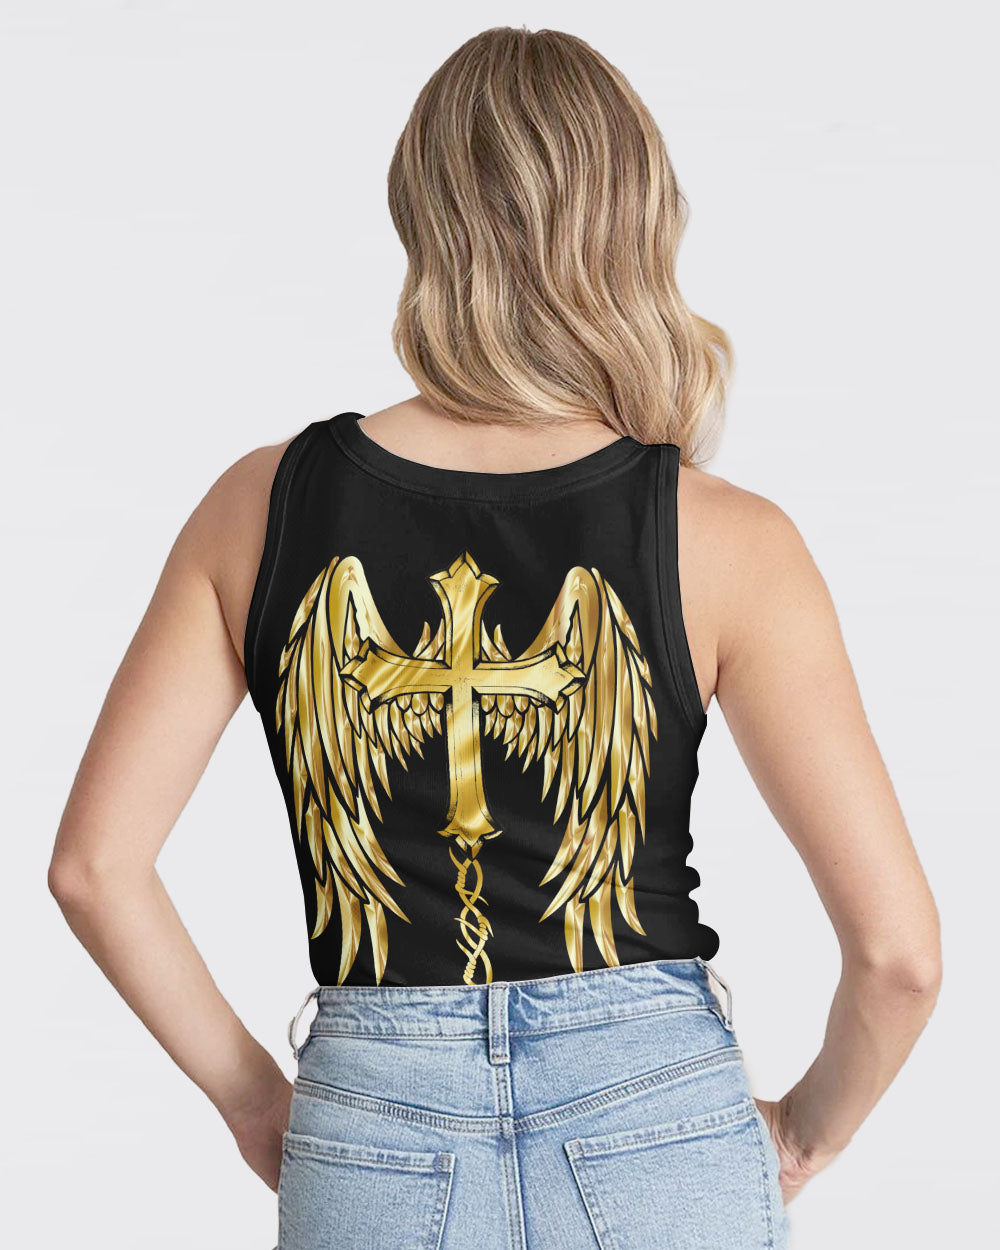 Gold Faith Wings Cross Women's Christian Tanks